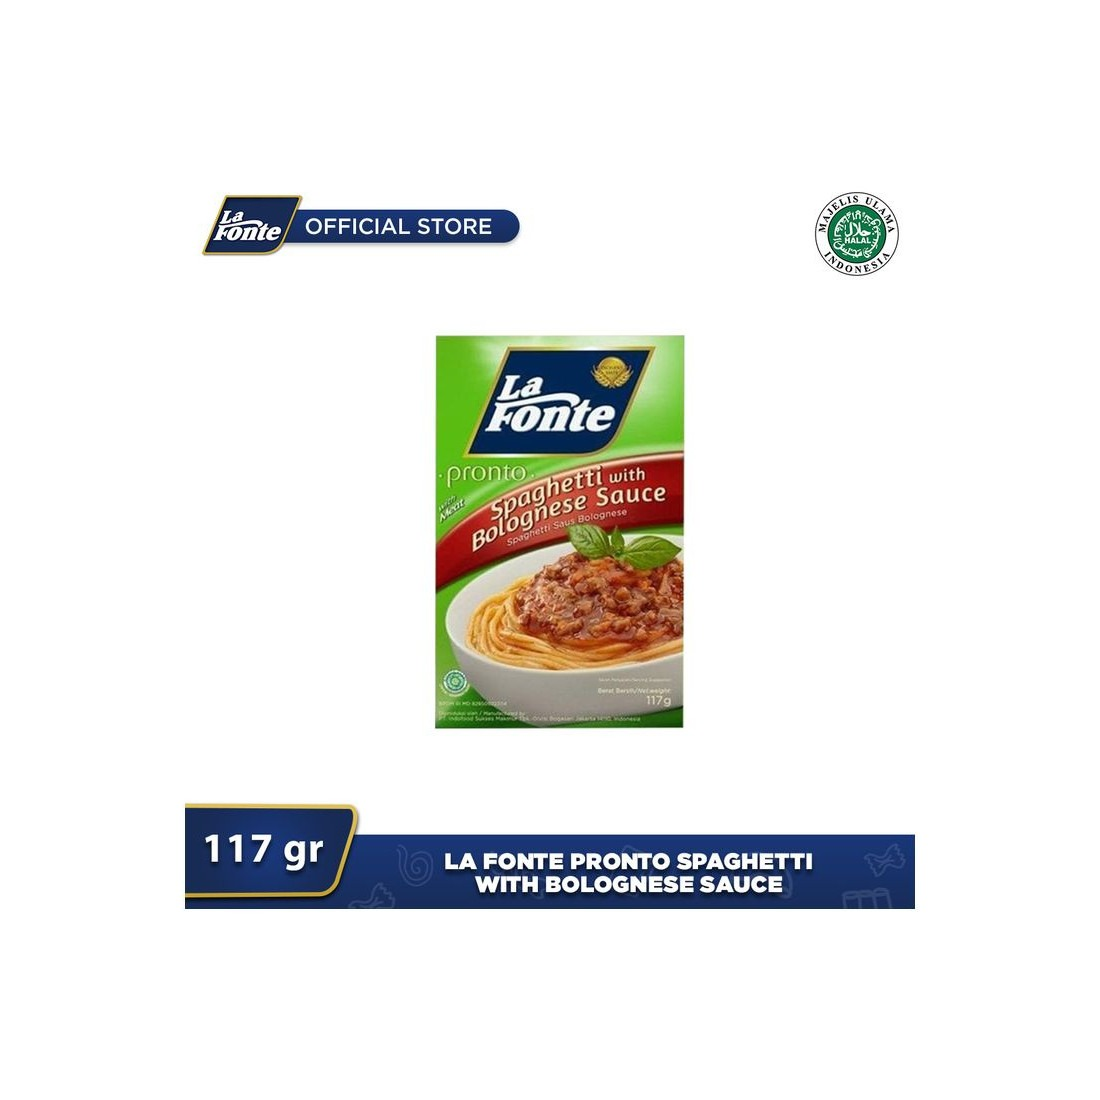 La Fonte 117G Spaghetti Instant Saus Bolognese